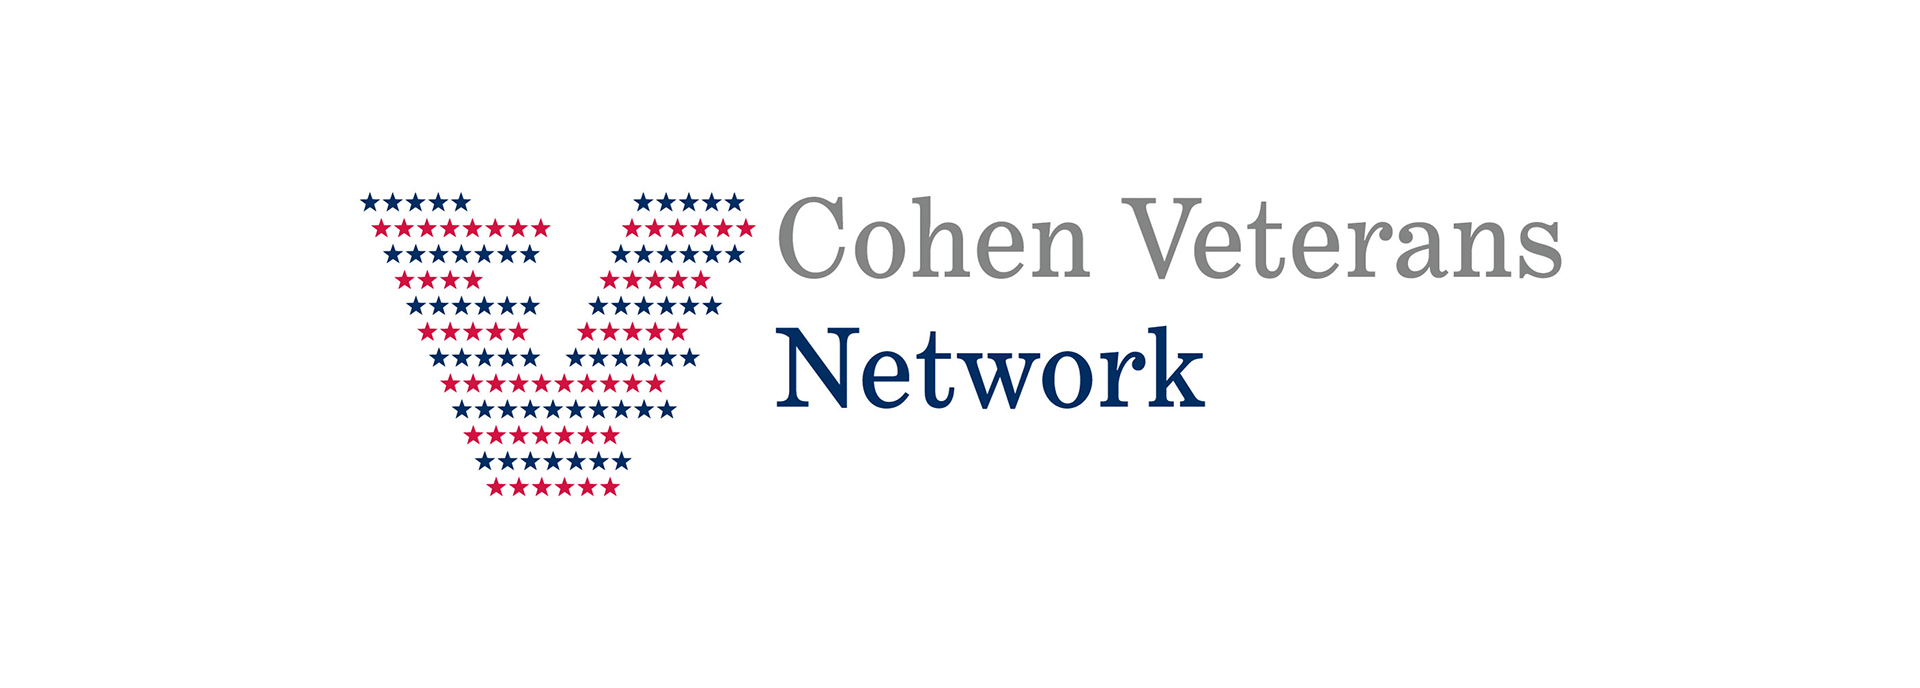 Cohens Veterans Network logo